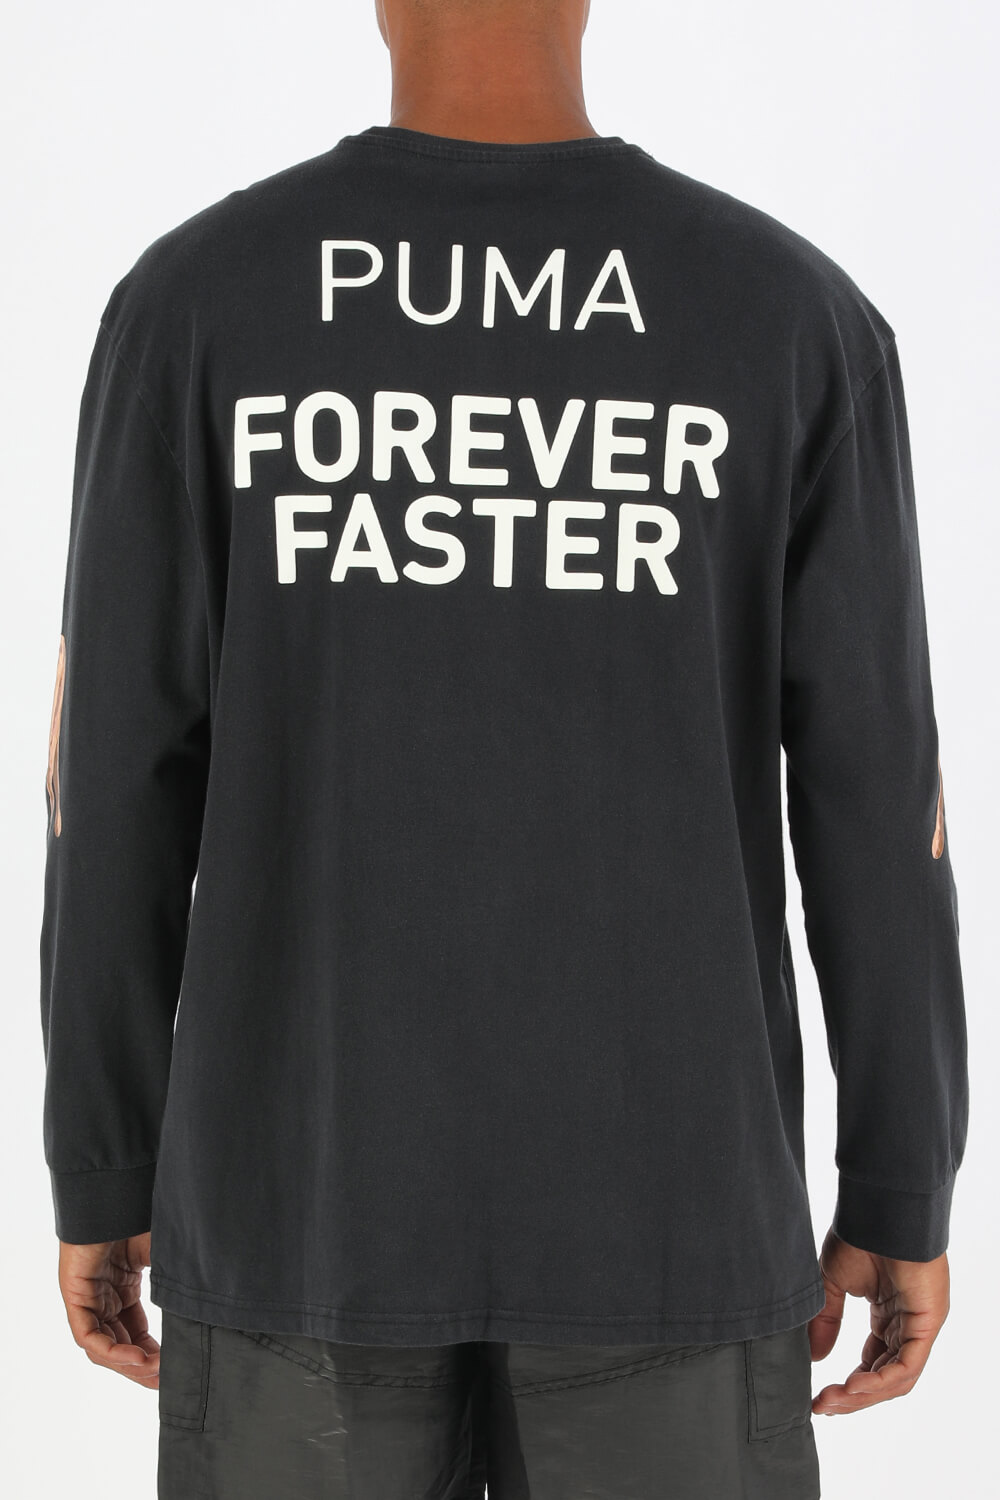 Puma X Rhuigi Shirt in Black PUMA